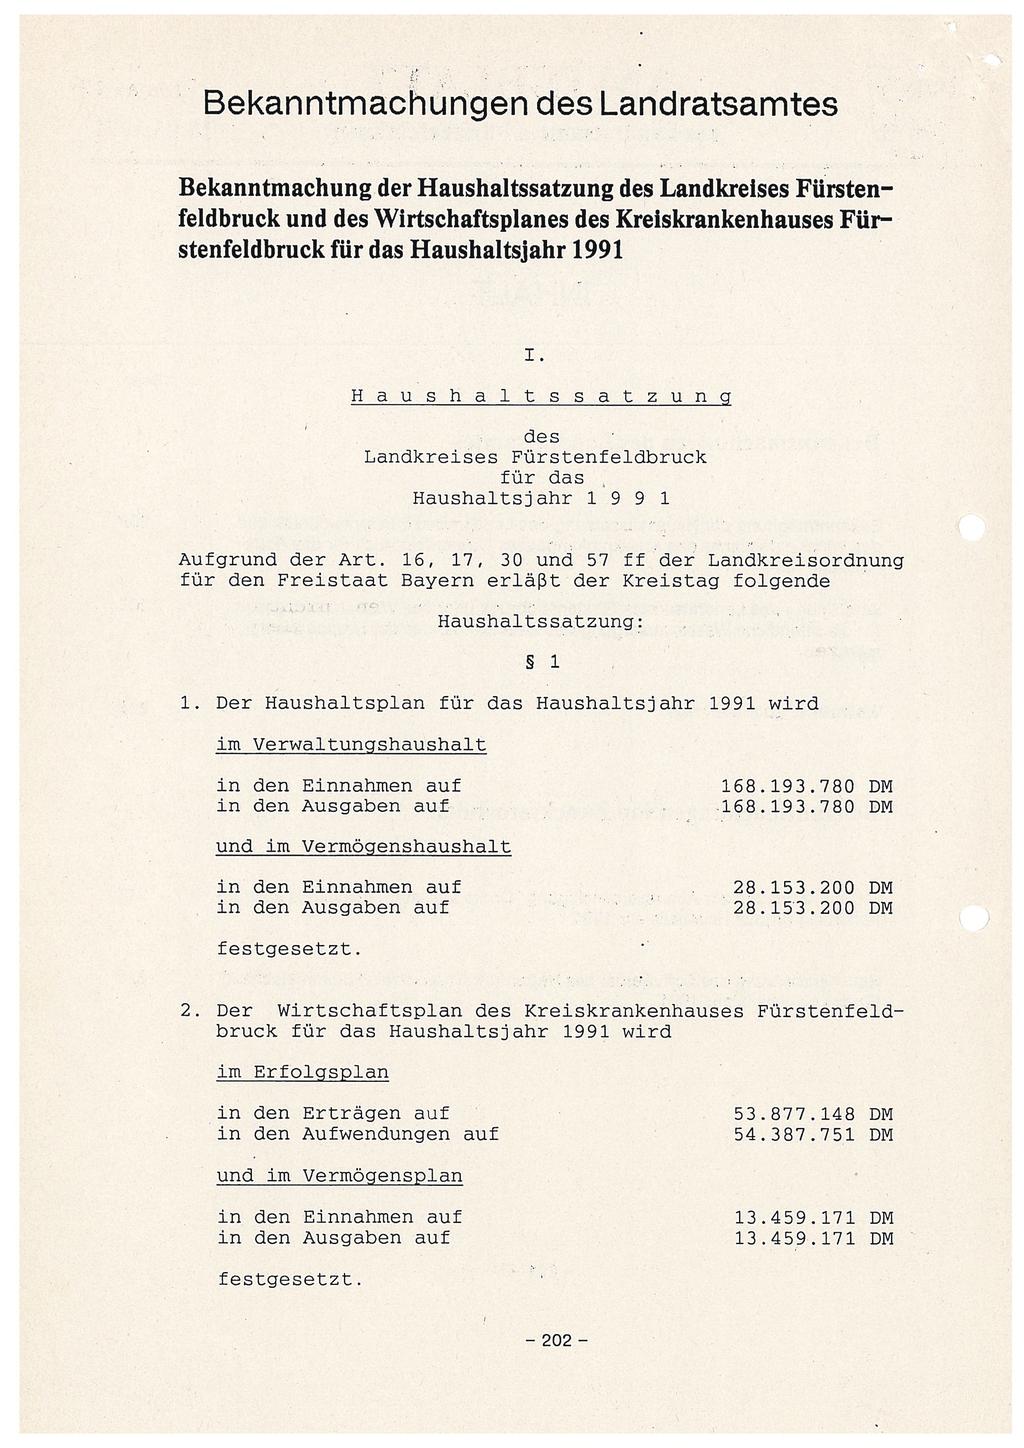 Bekanntmachungen des Landratsamtes Bekanntmachung der Haushaltssatzung des Landkreises Fürstenfeldbruck und des Wirtschaftsplanes des Kreiskrankenhauses Fürstenfeldbruck für das Haushaltsjahr 1991 i.